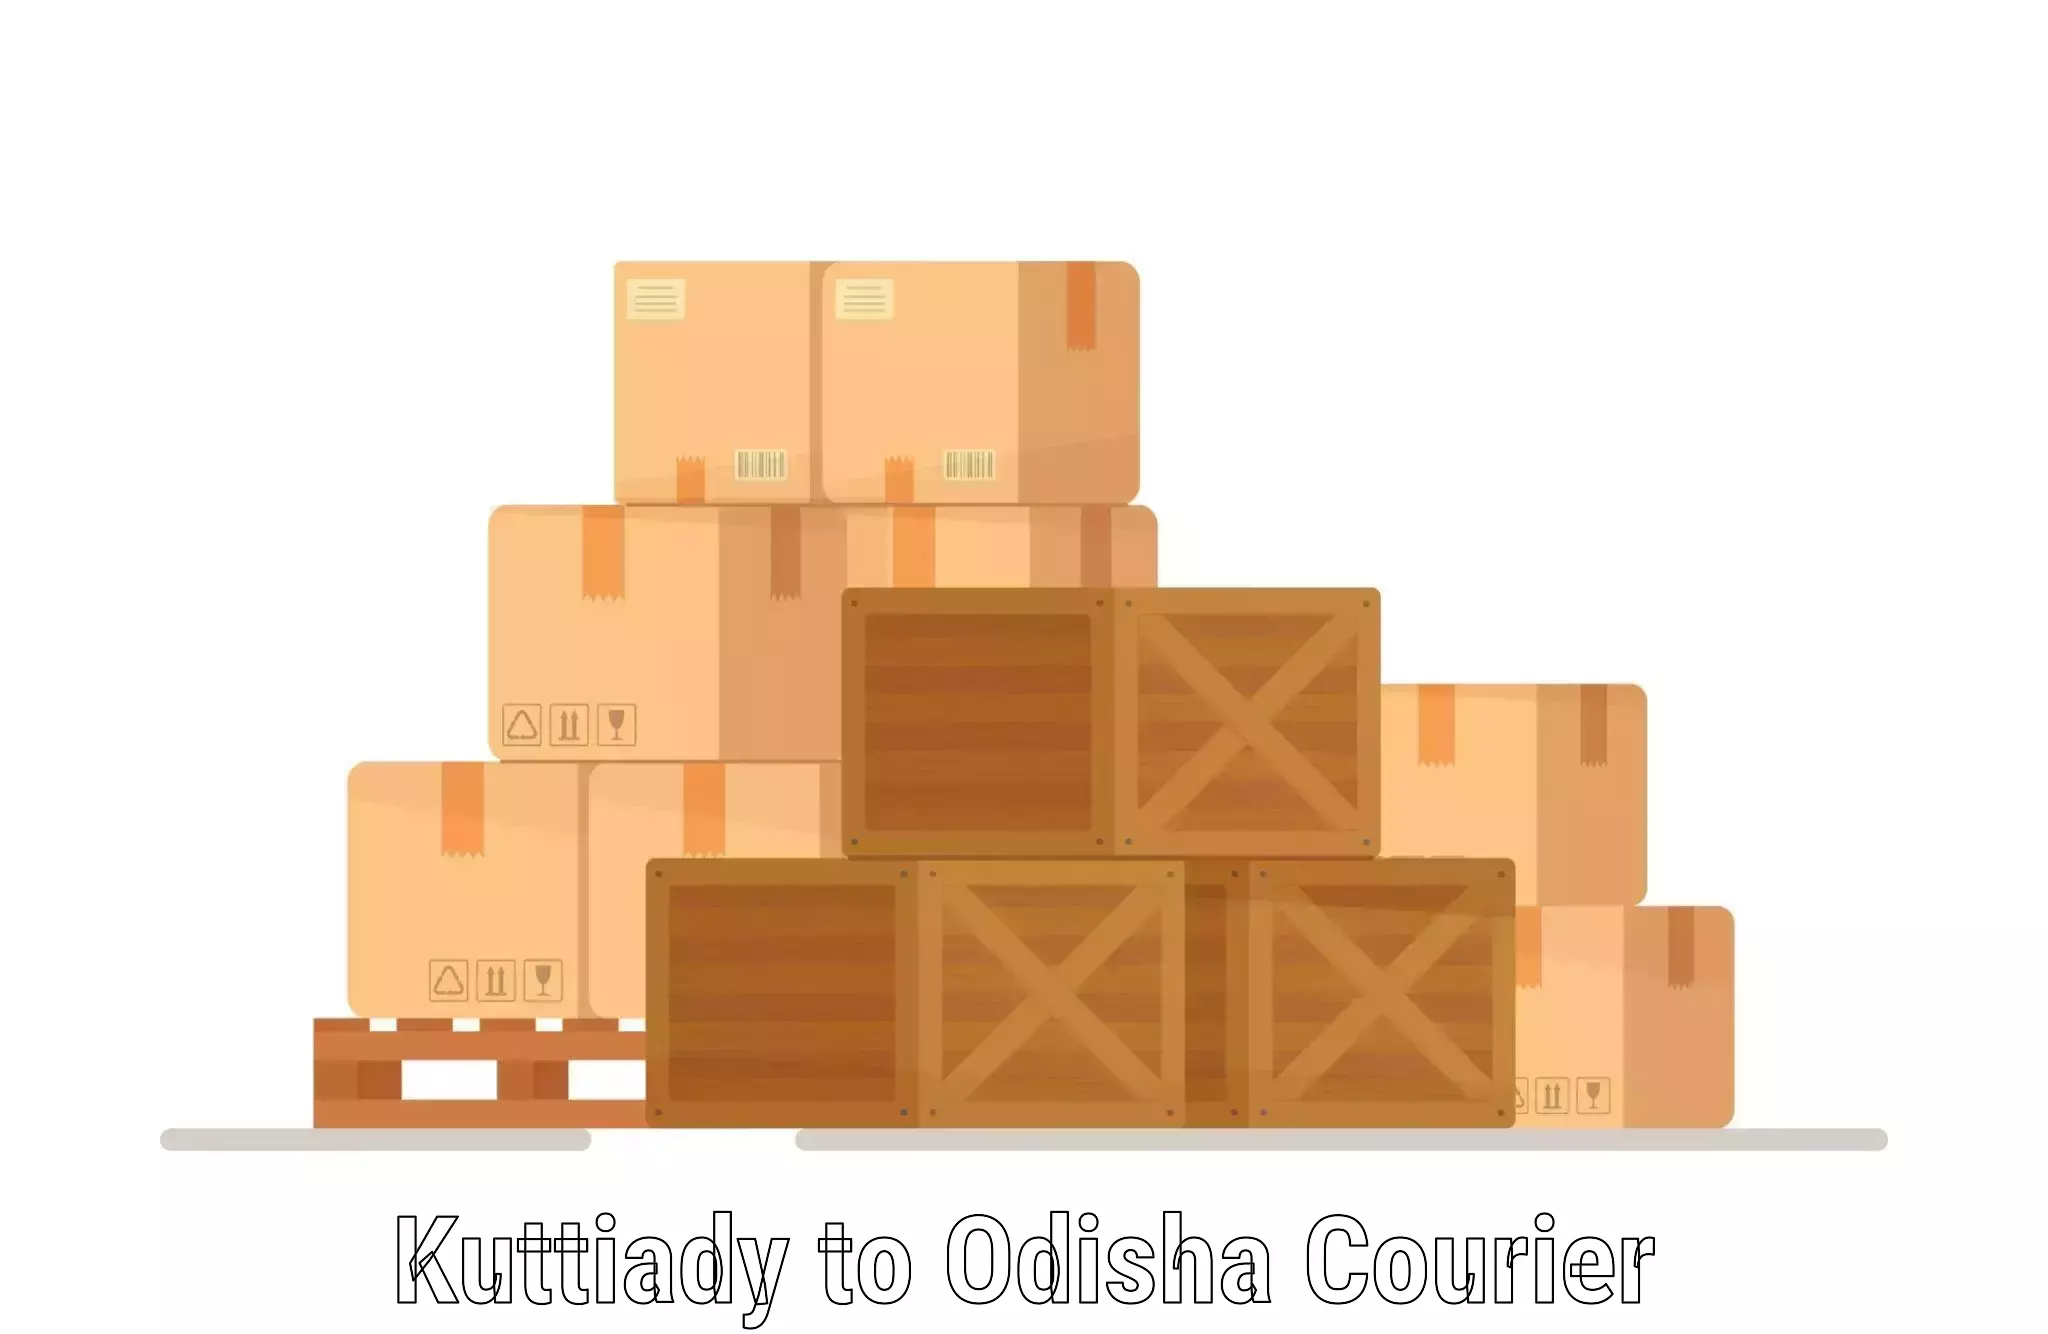 Business shipping needs Kuttiady to Odisha